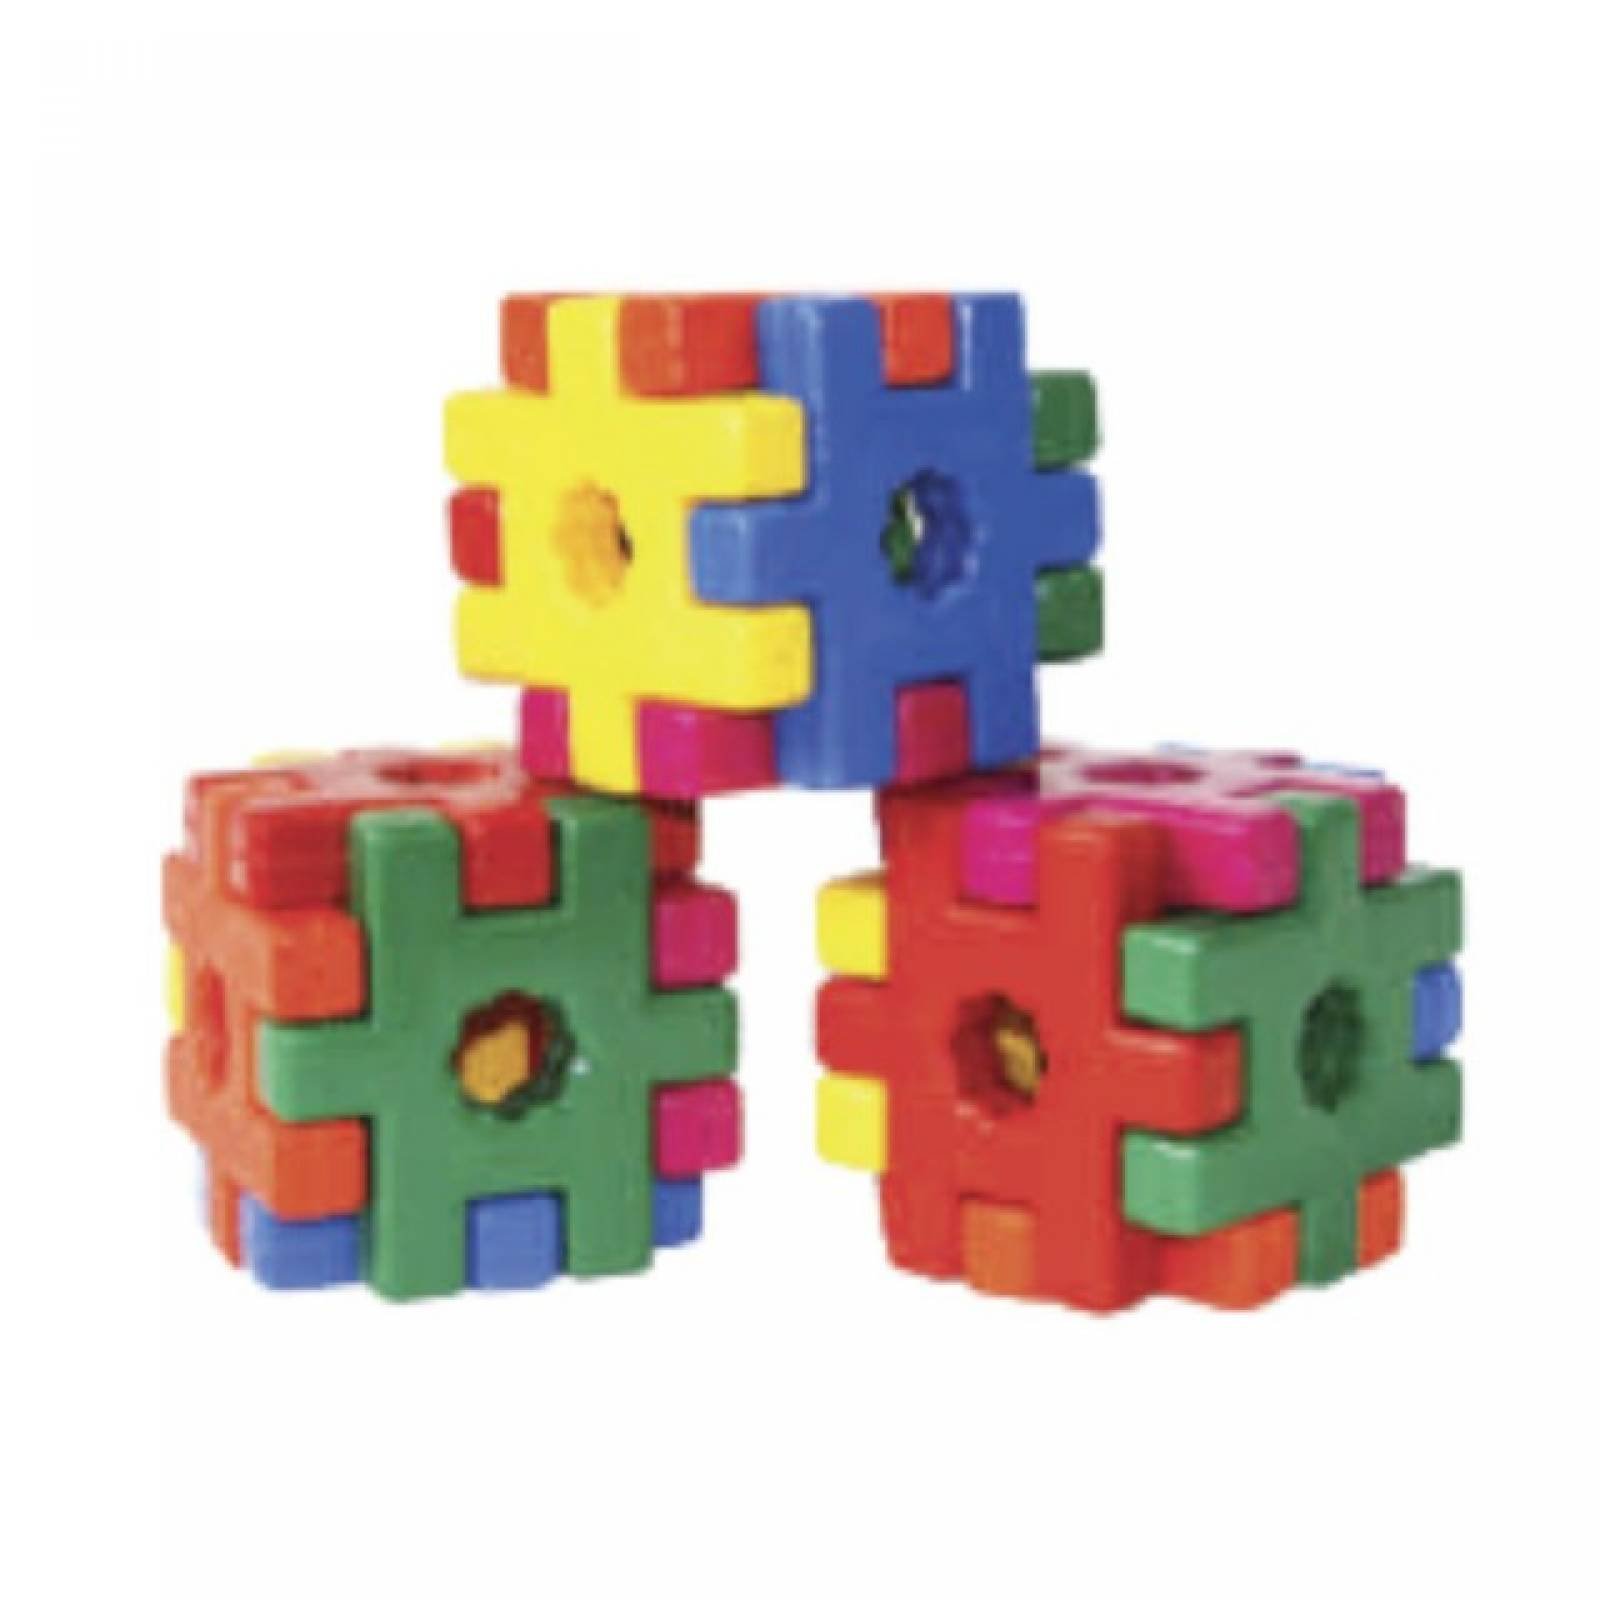 Set Forma-Cubos juguete didÃ¡citco de la linea ConstrucciÃ³n